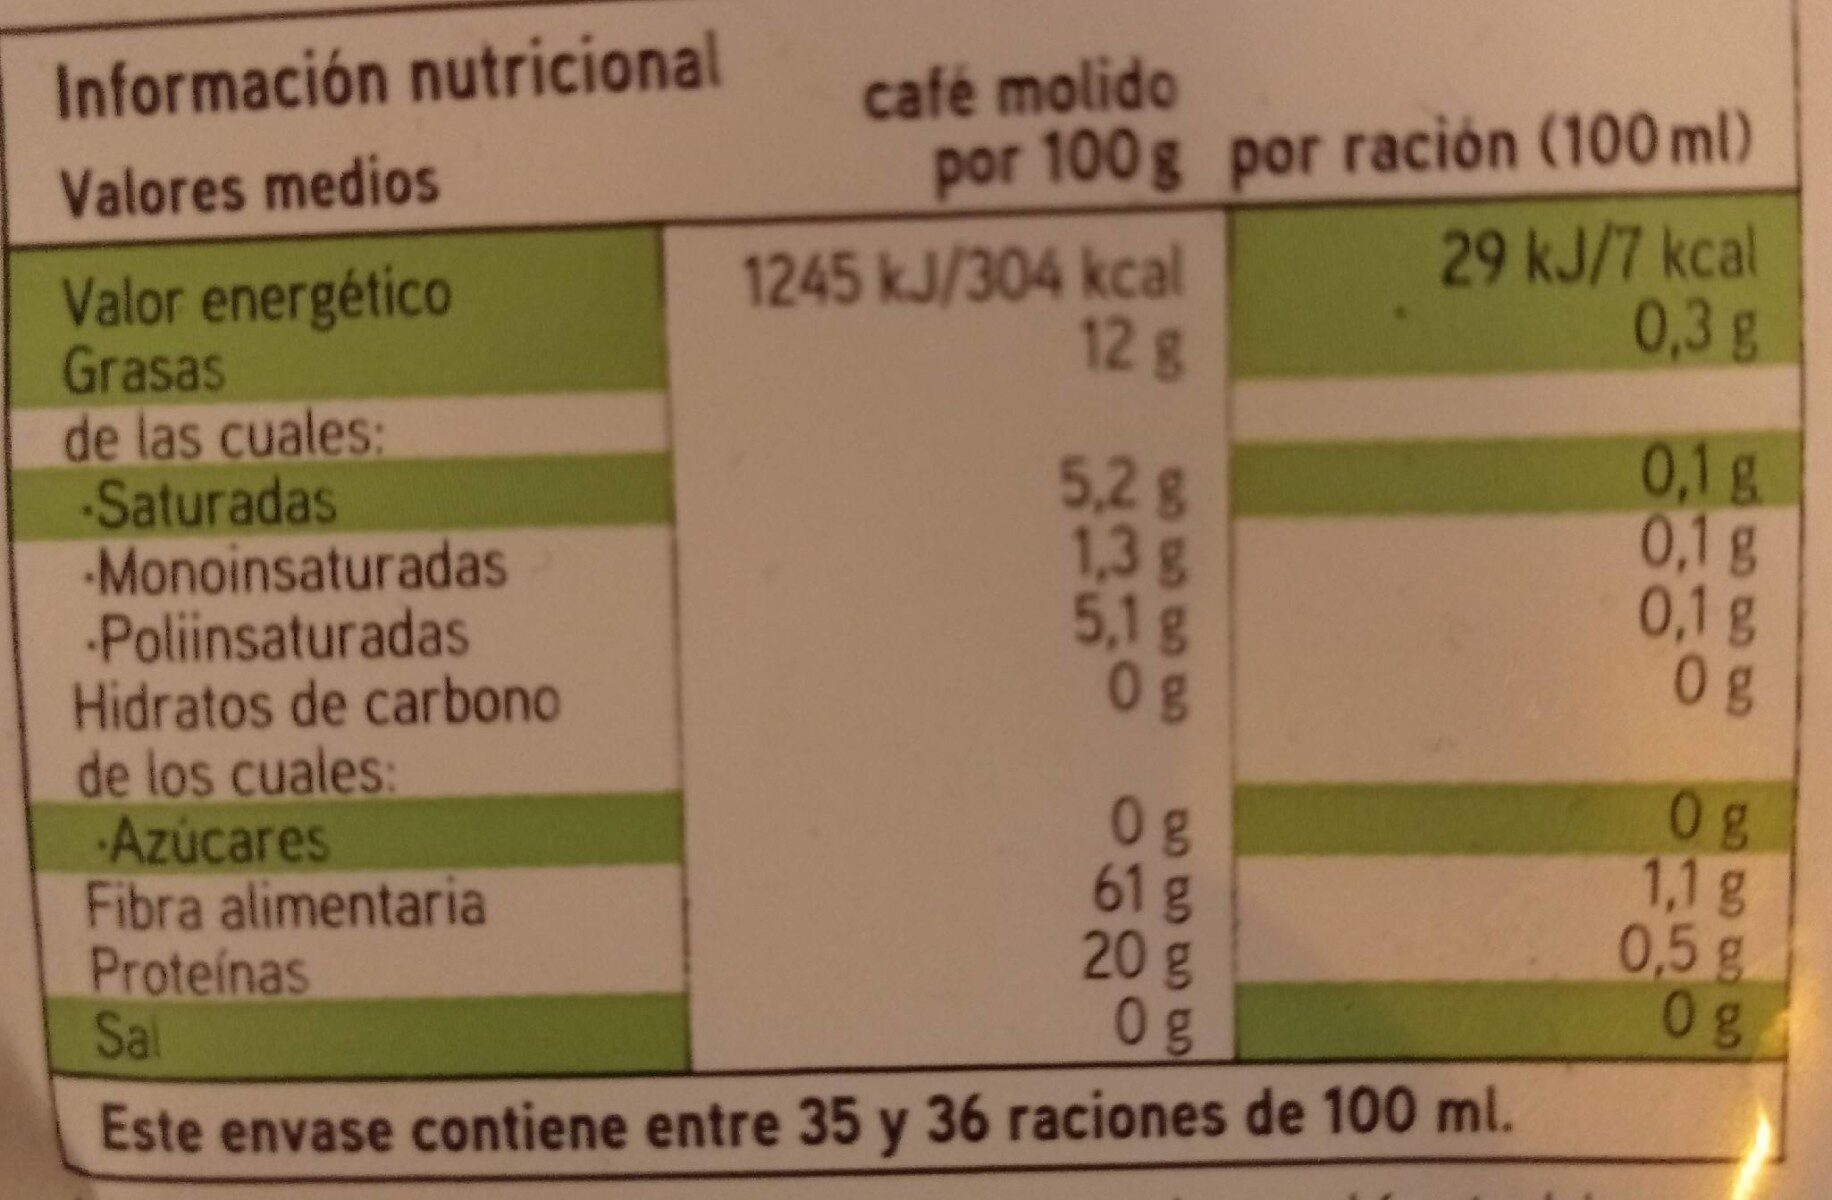 Cafe molido natural - Voedingswaarden - es